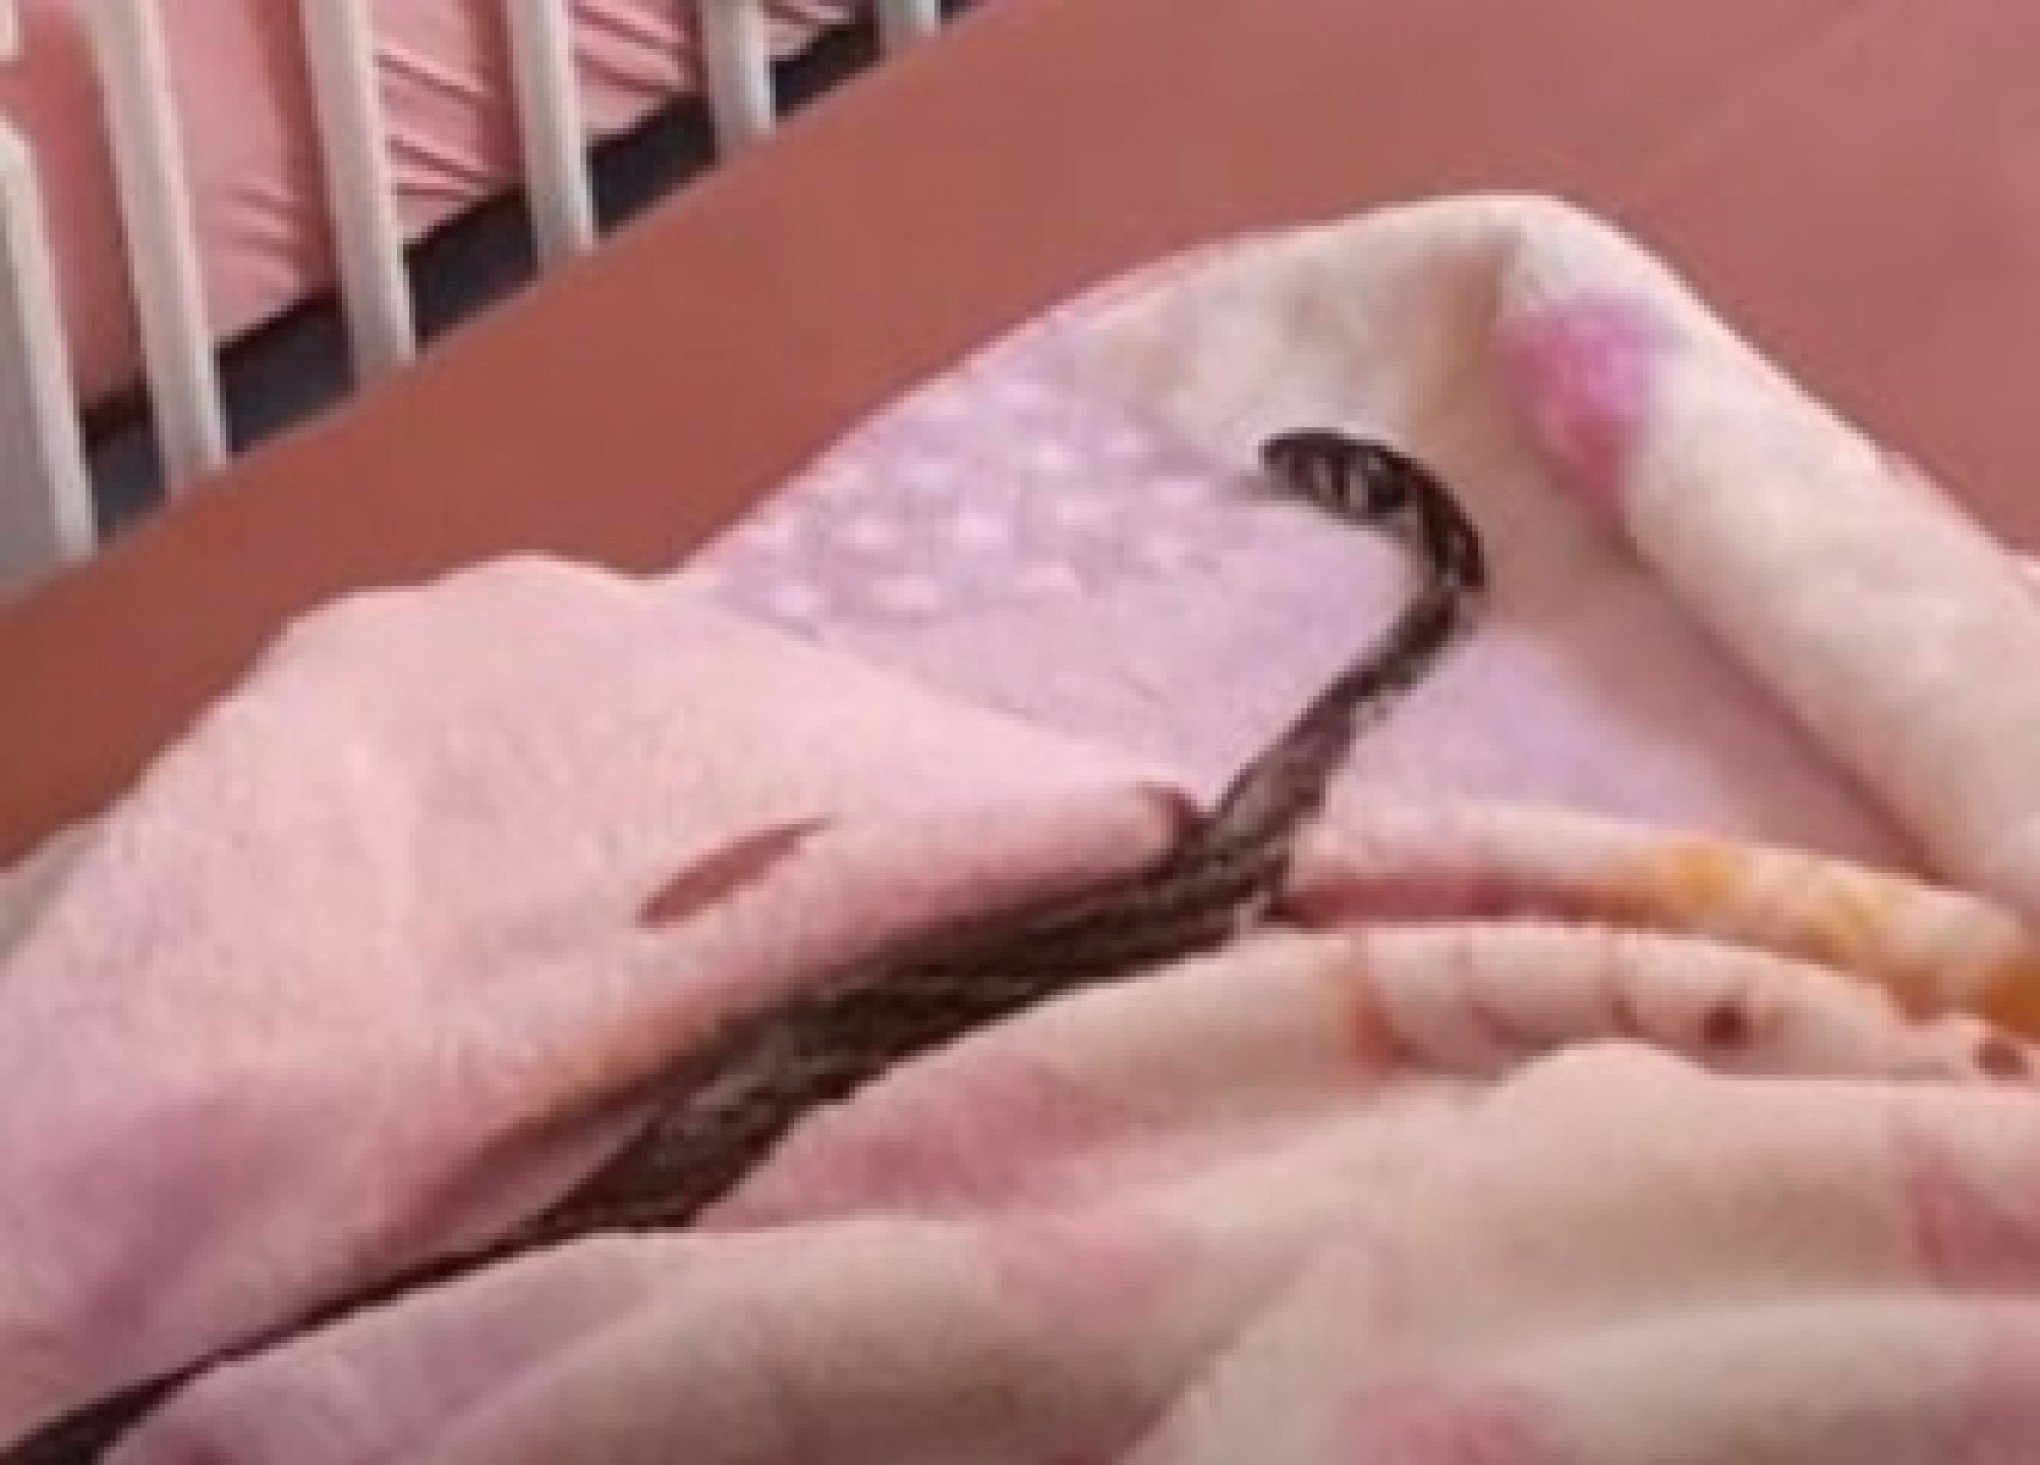 COBRA NO BERÇO: Serpente invade quarto de criança e assusta família em SC; veja vídeo